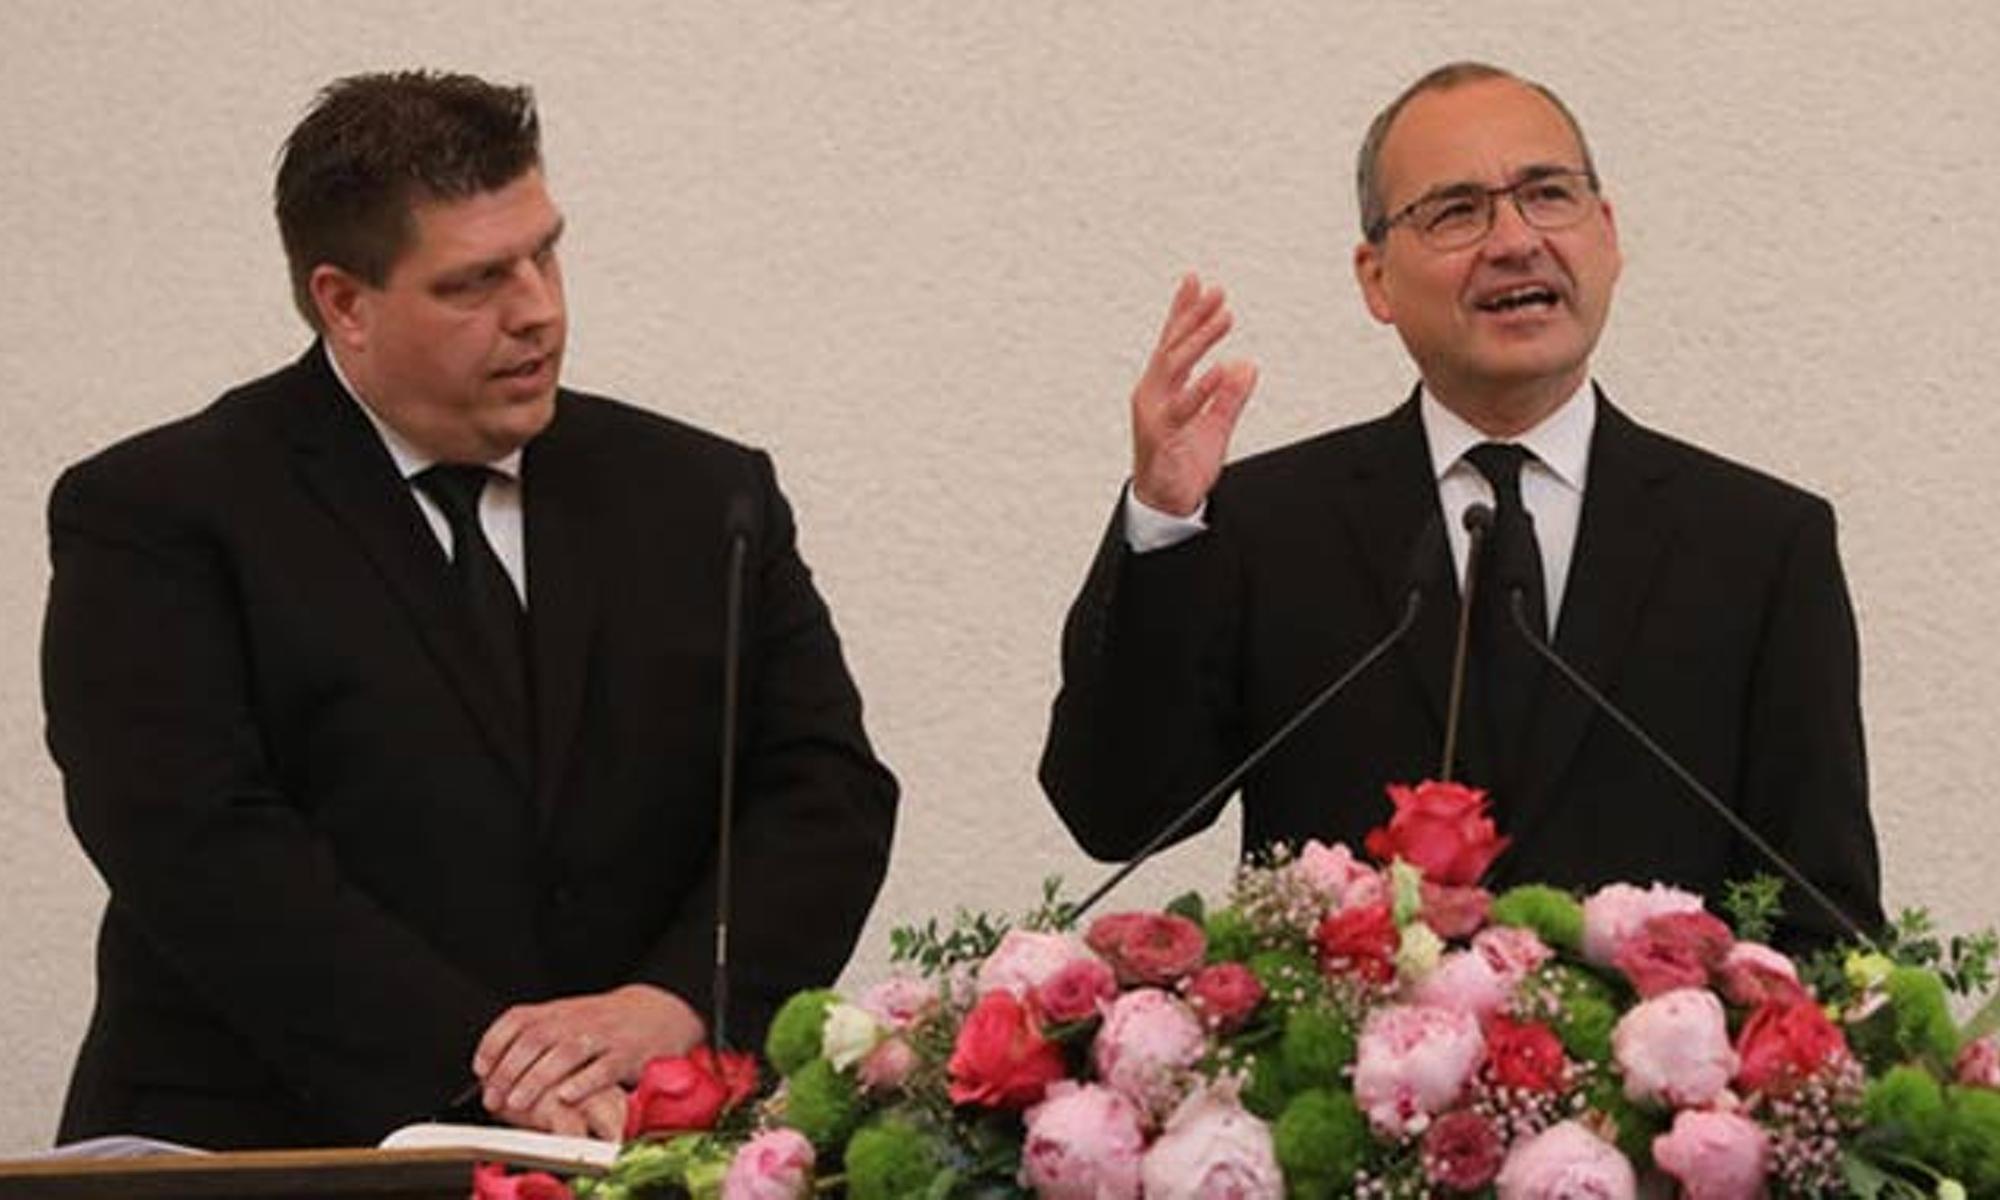 Stammapostel Schneider (im Bild rechts) am Altar (Foto: Oliver Rütten/nac.today)